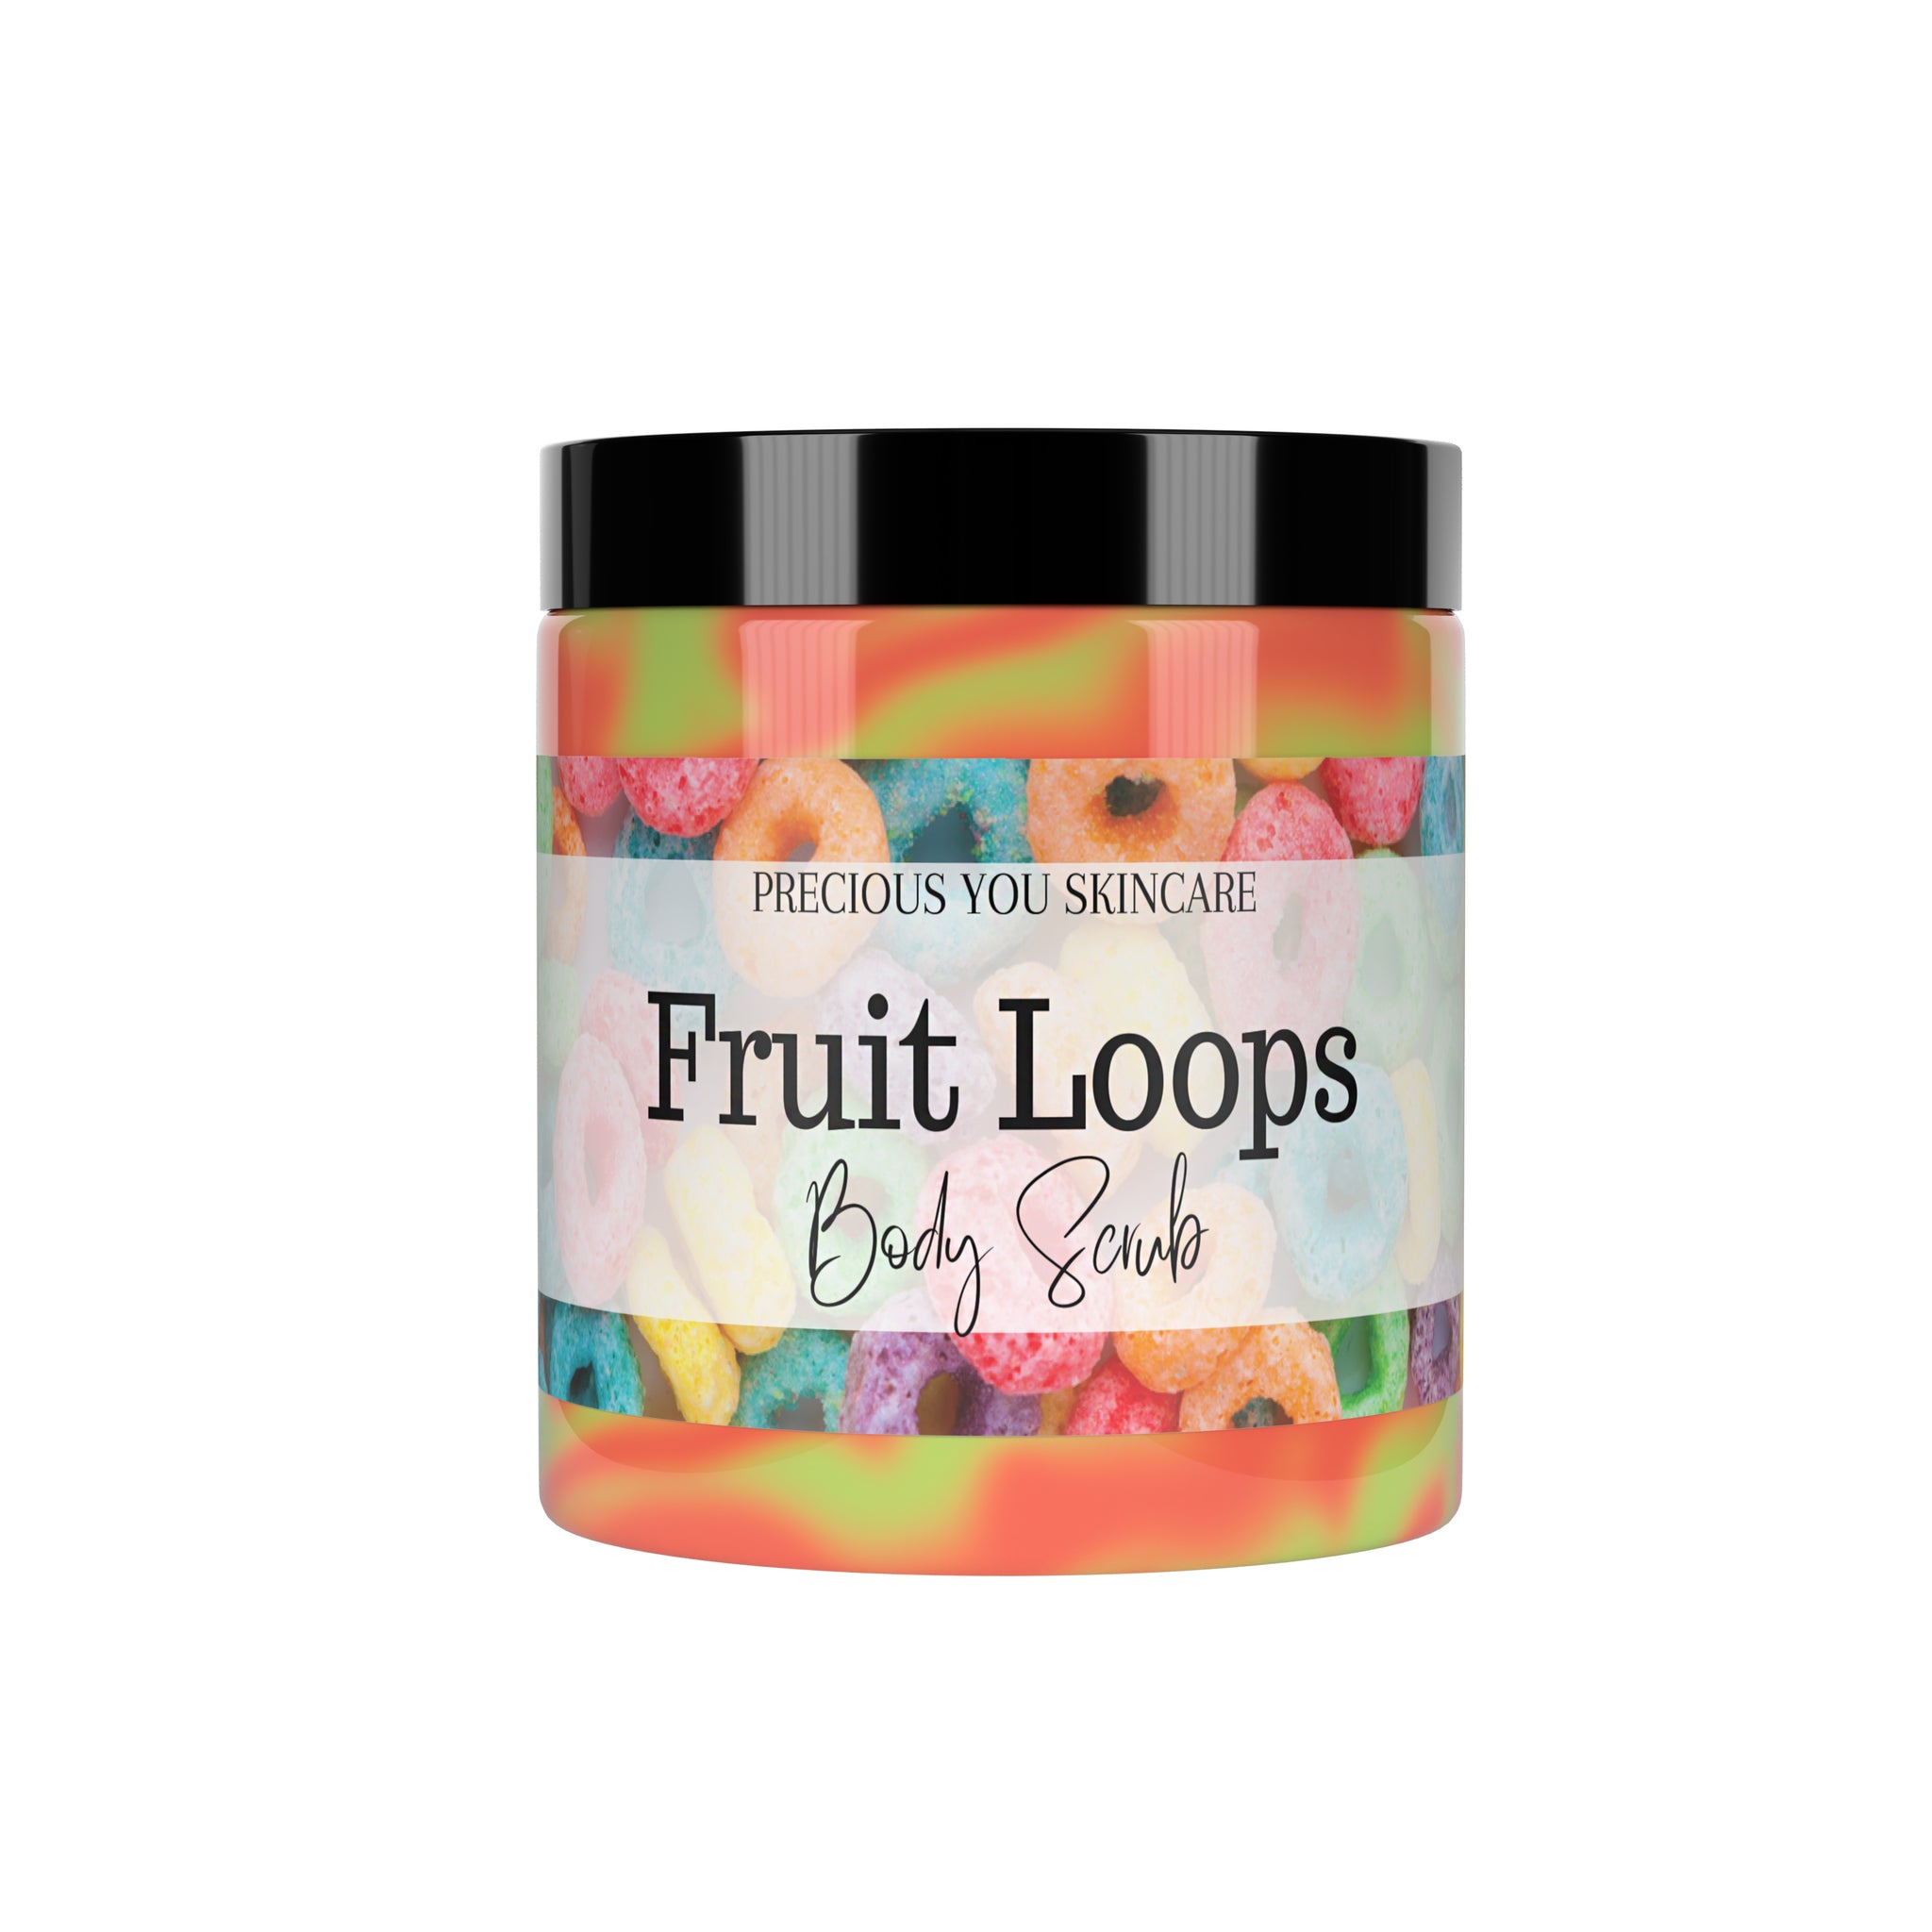 Fruit loops body scrub